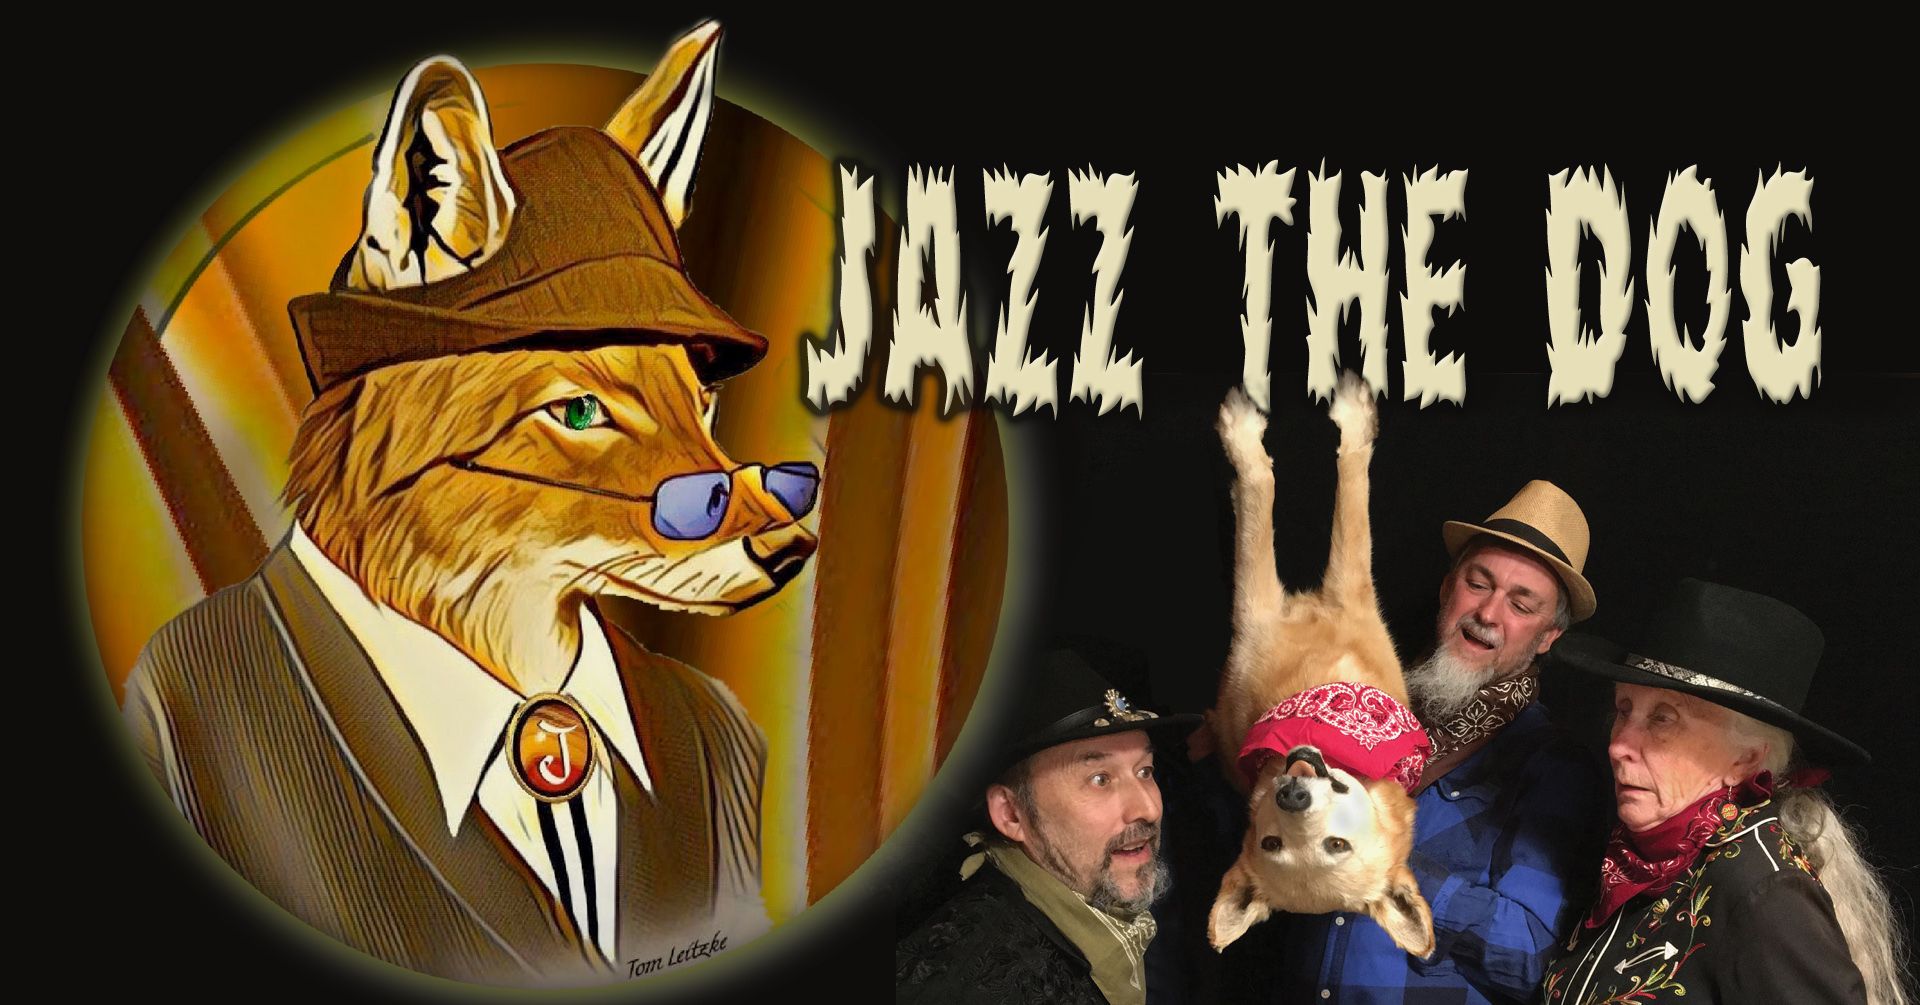 Jazz the Dog band promo image